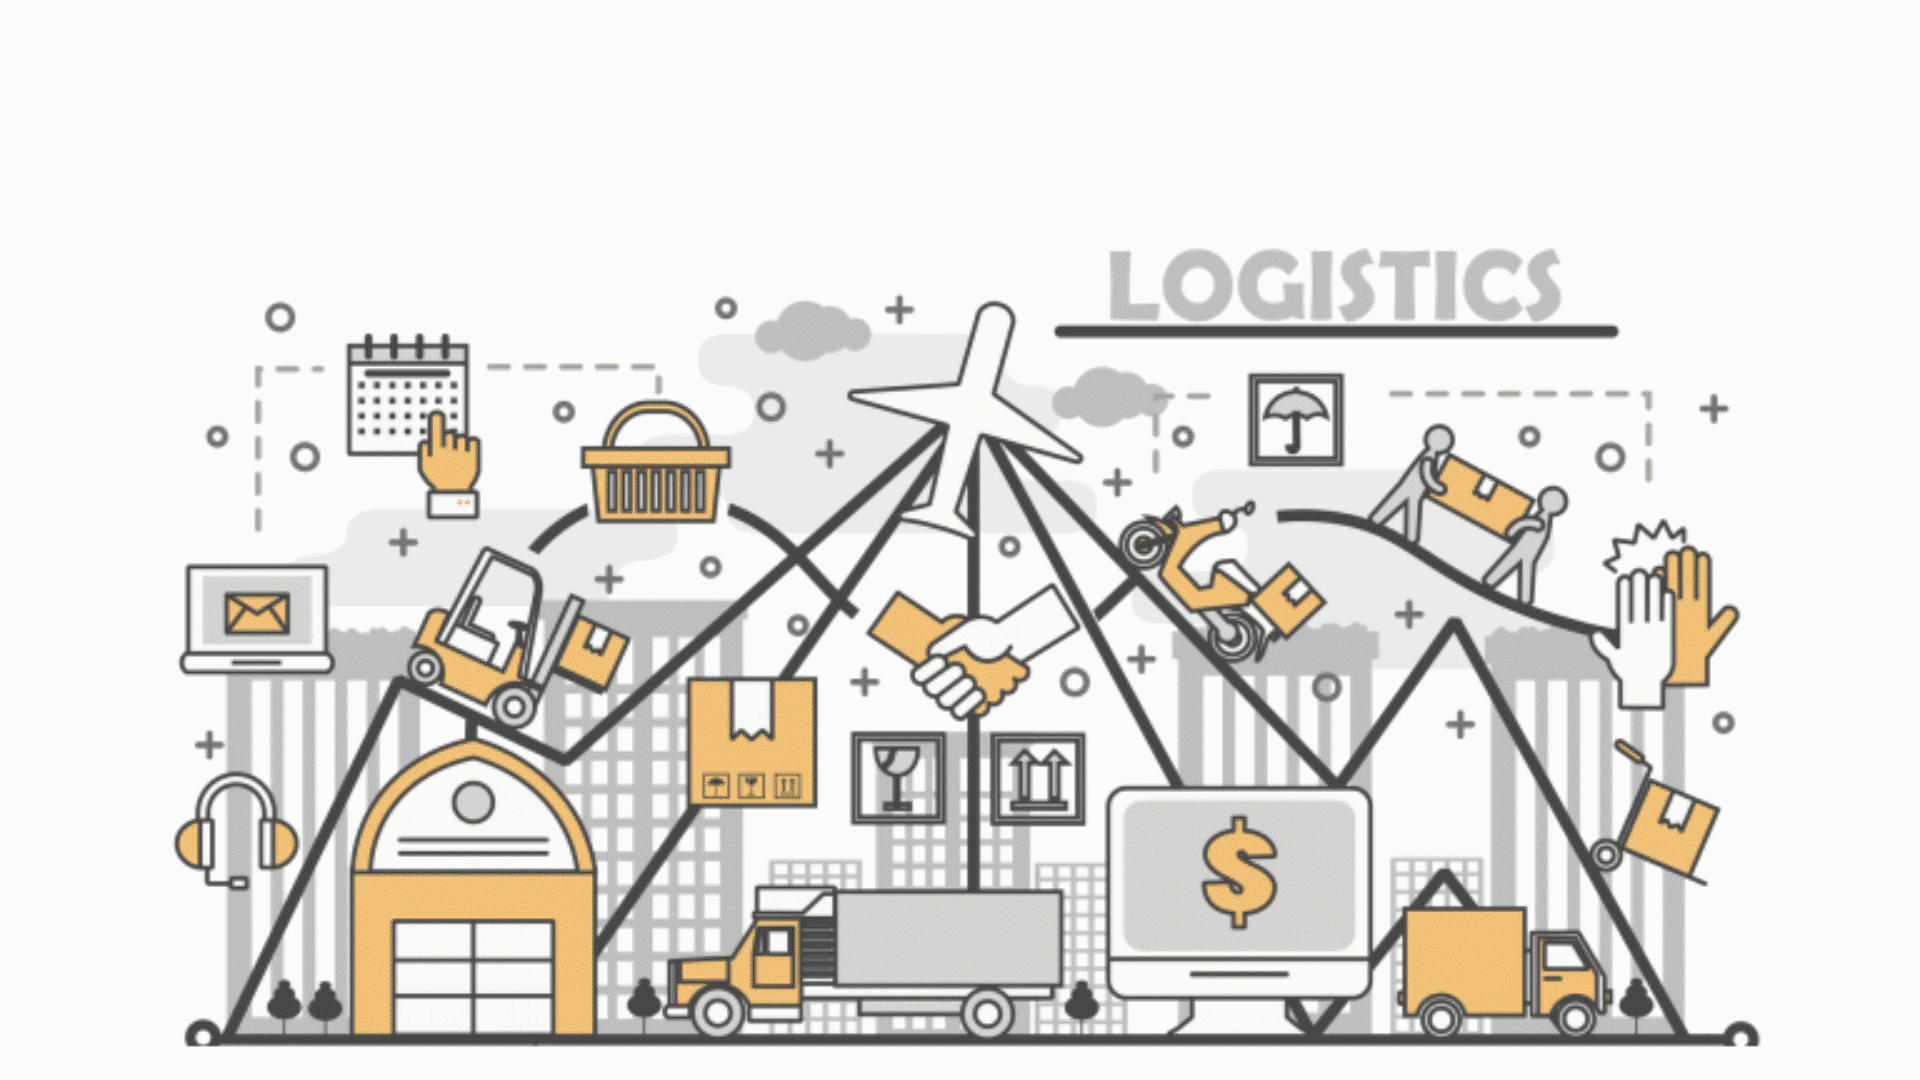 Enterprise SAP Implementation for Logistics company